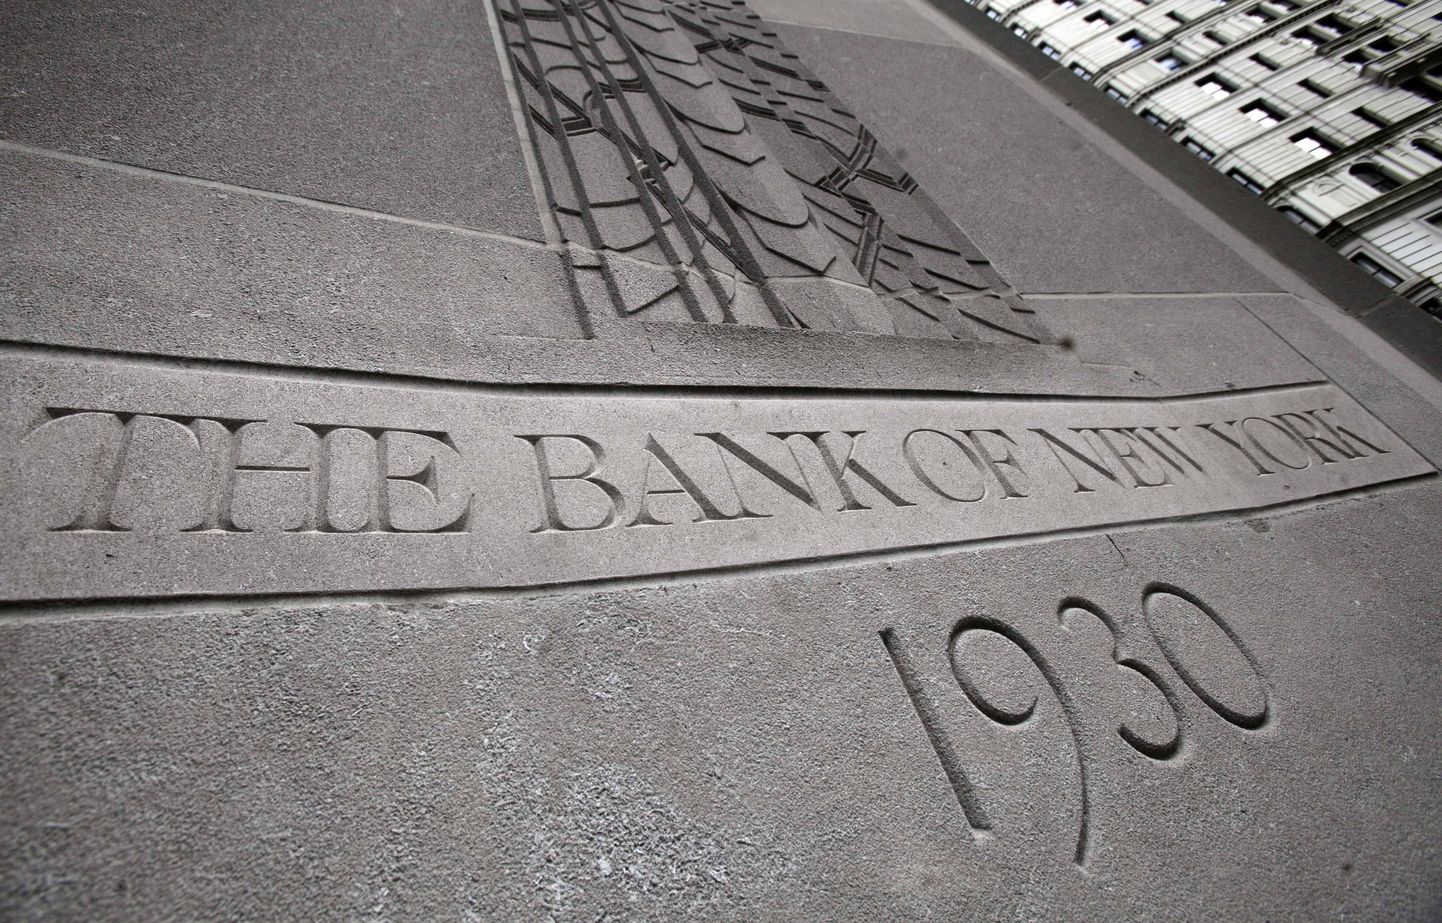 Bank of New York Mellon.